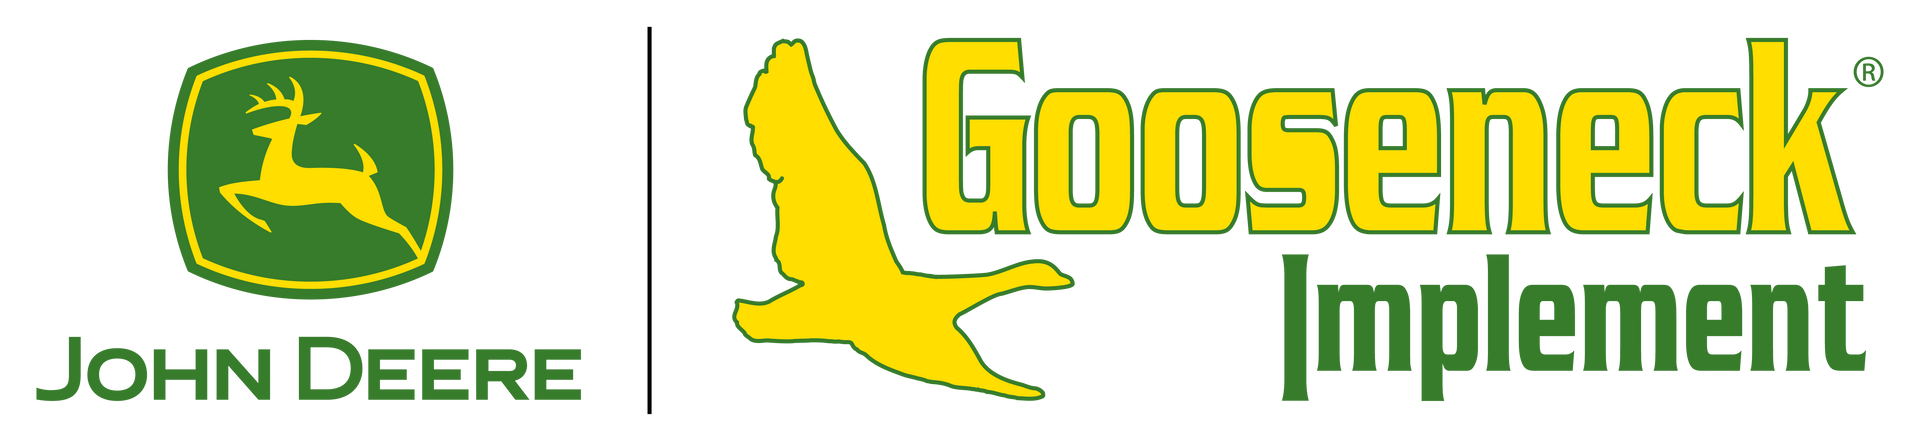 Deere and Gooseneck Implement logo